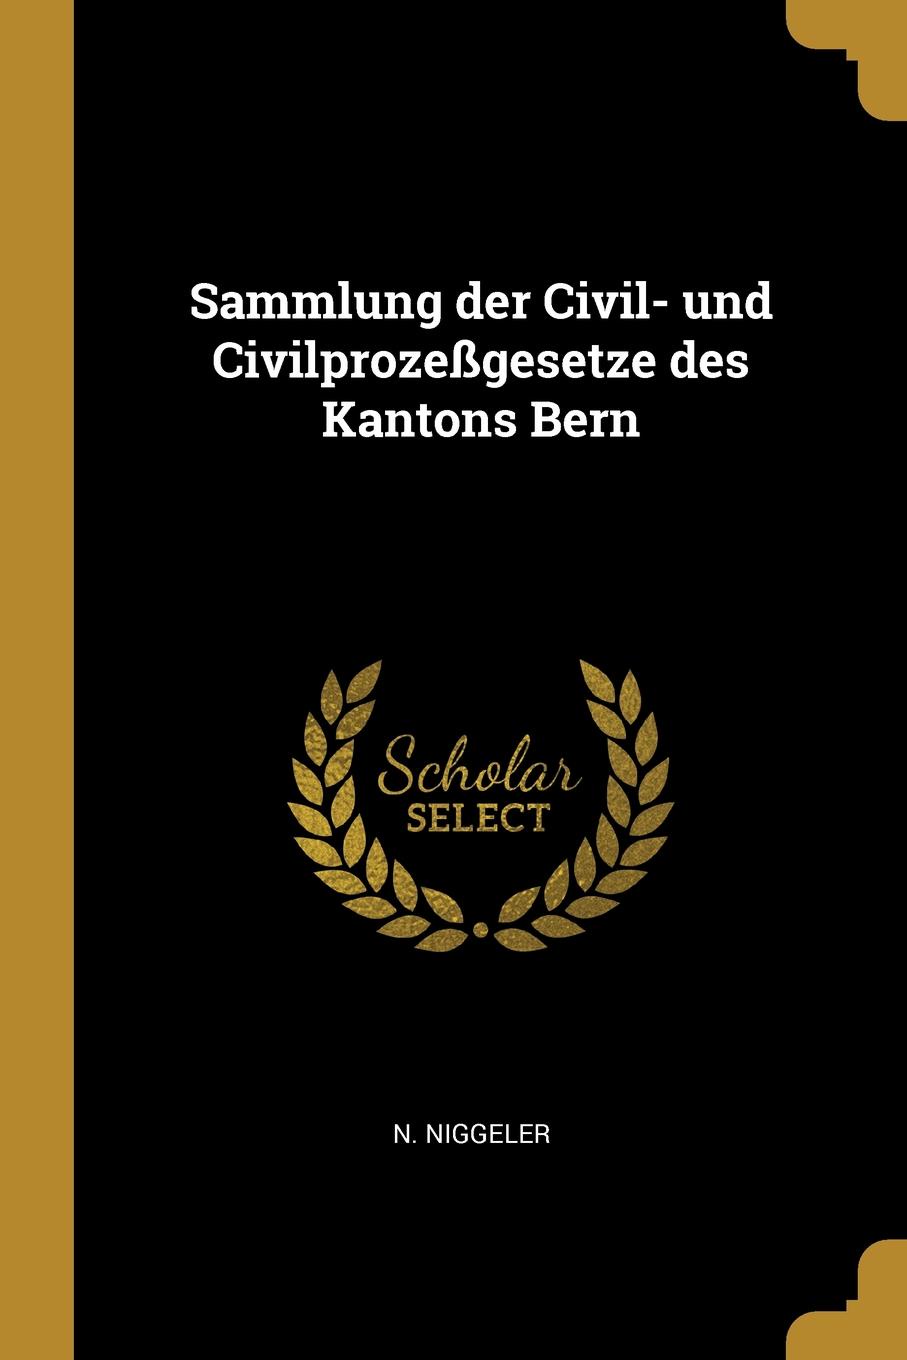 Sammlung der Civil- und Civilprozessgesetze des Kantons Bern